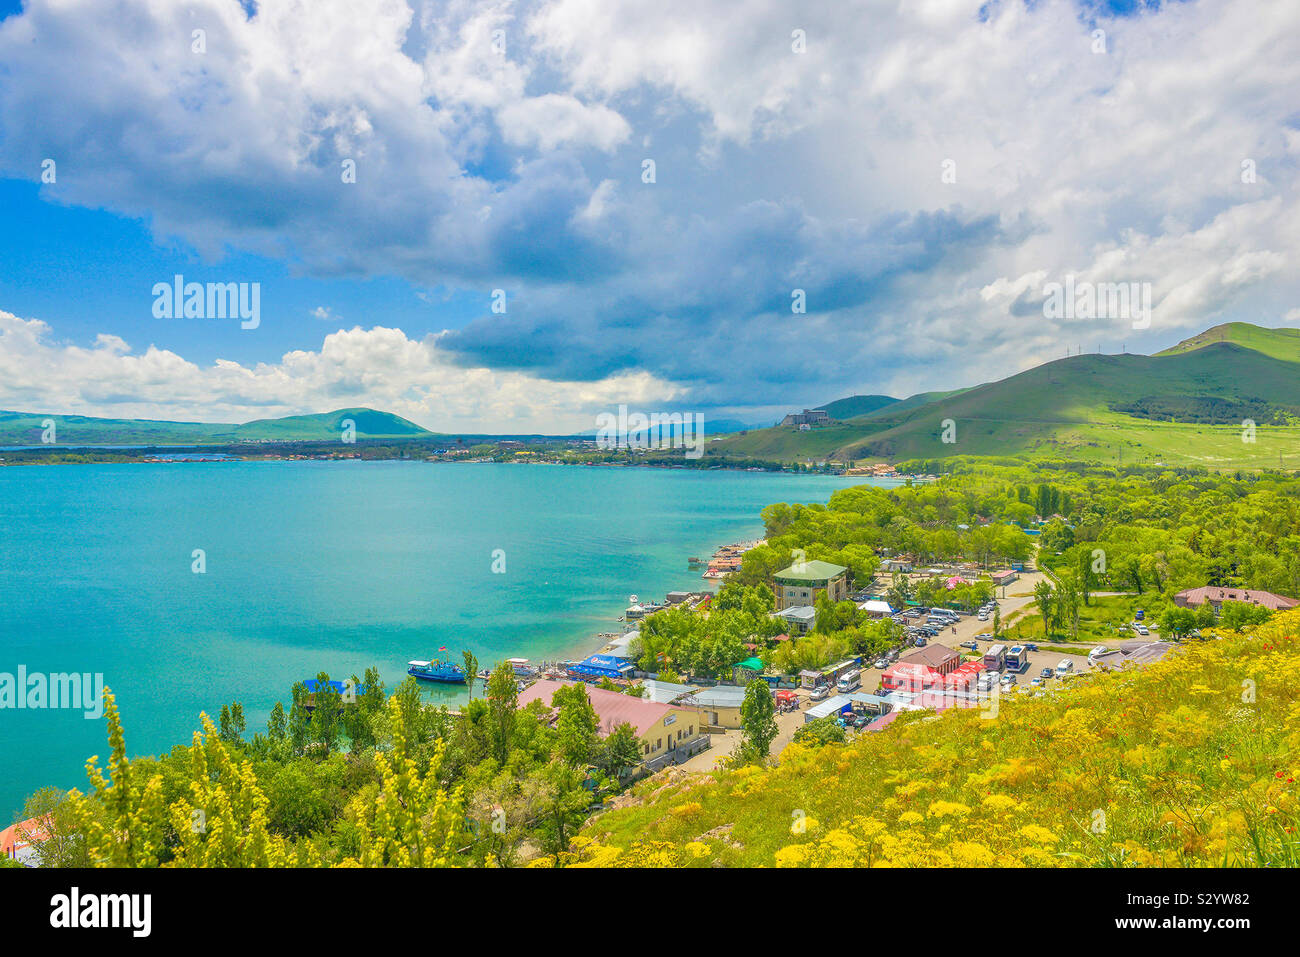 Lake Sevan in Armenia Stock Photo